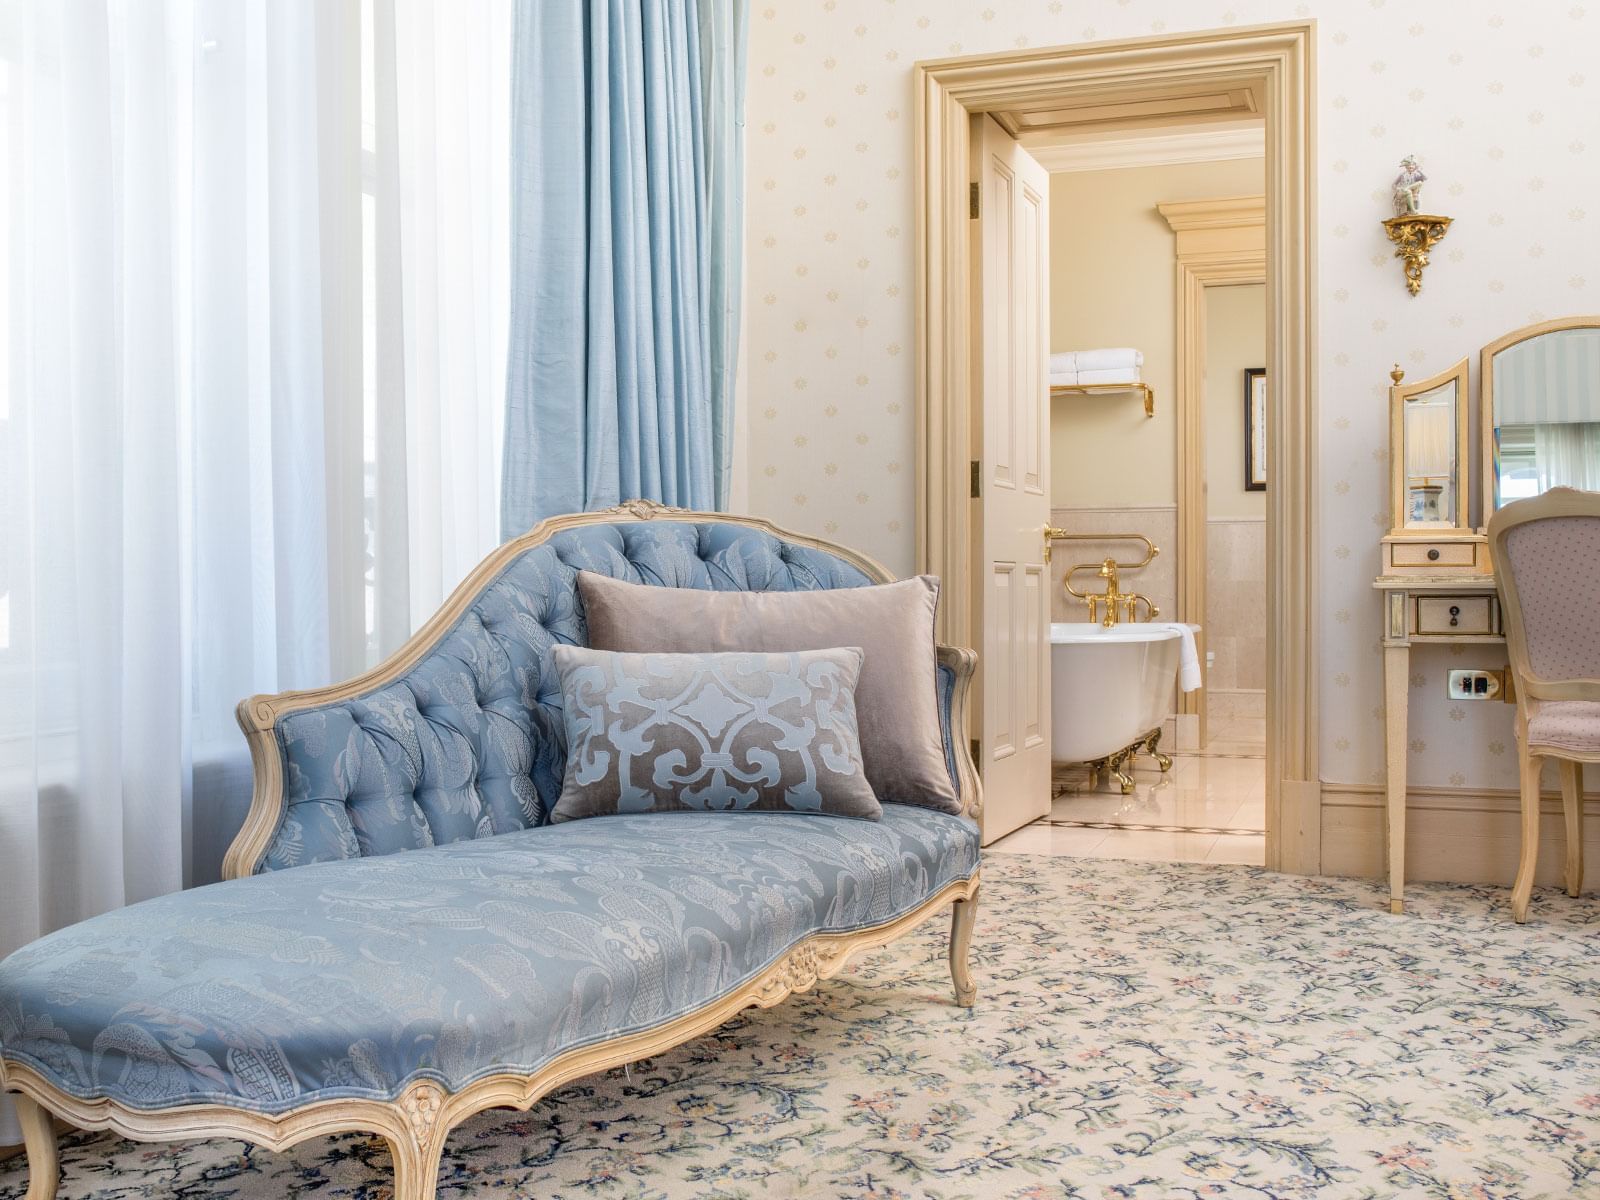 Royal Suite Bedroom at The Hotel Windsor Melbourne